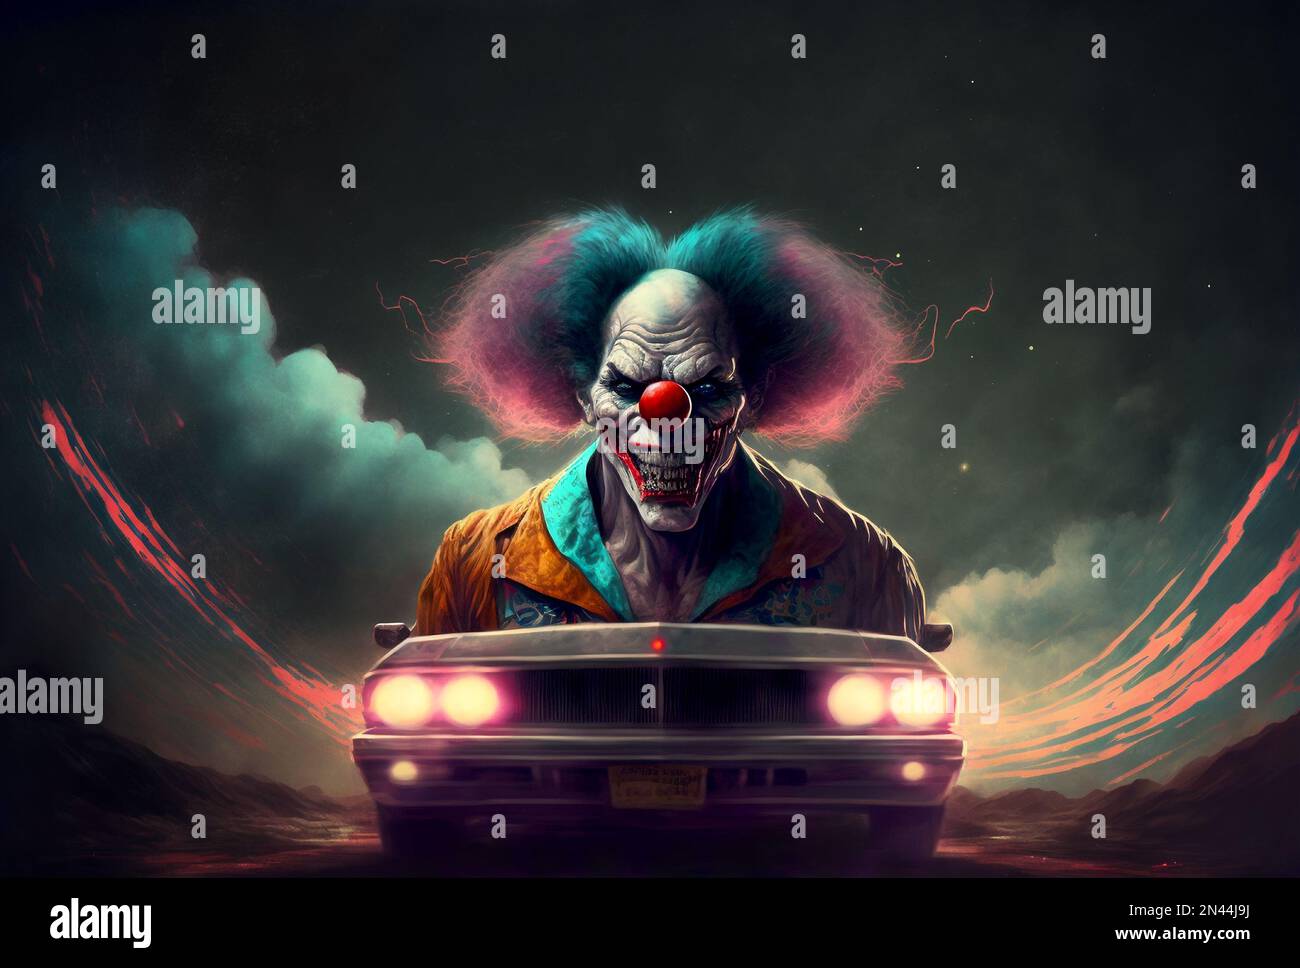 Albtraum Nummer Zwei. Ein teuflischer Clown-Wagen kommt nachts schnell auf uns zu. Stockfoto